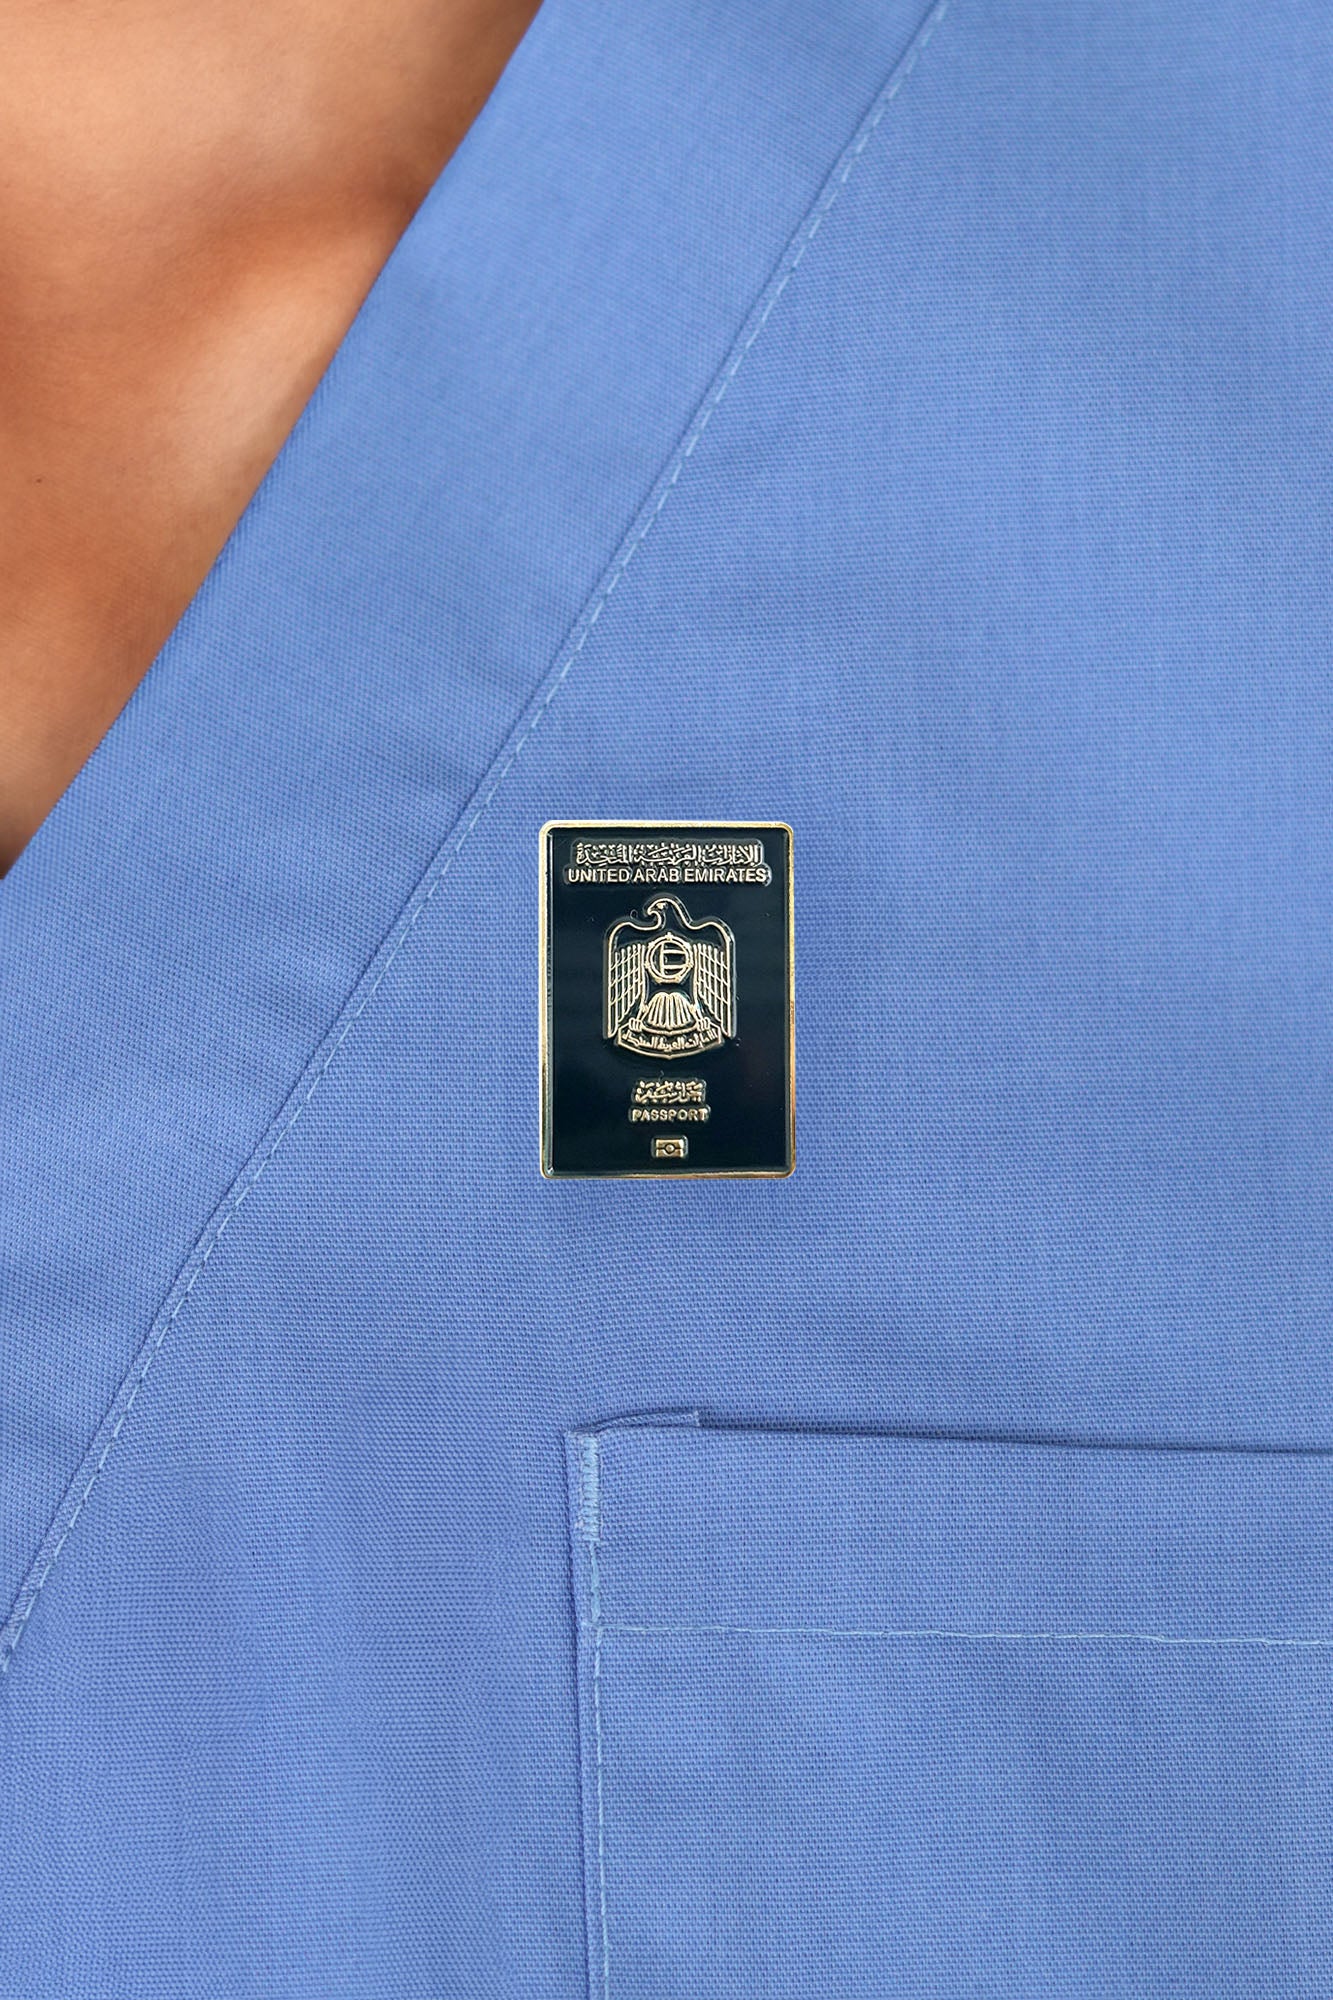 دبوس جواز السفر الإمارتي مع قفل مغناطيسي